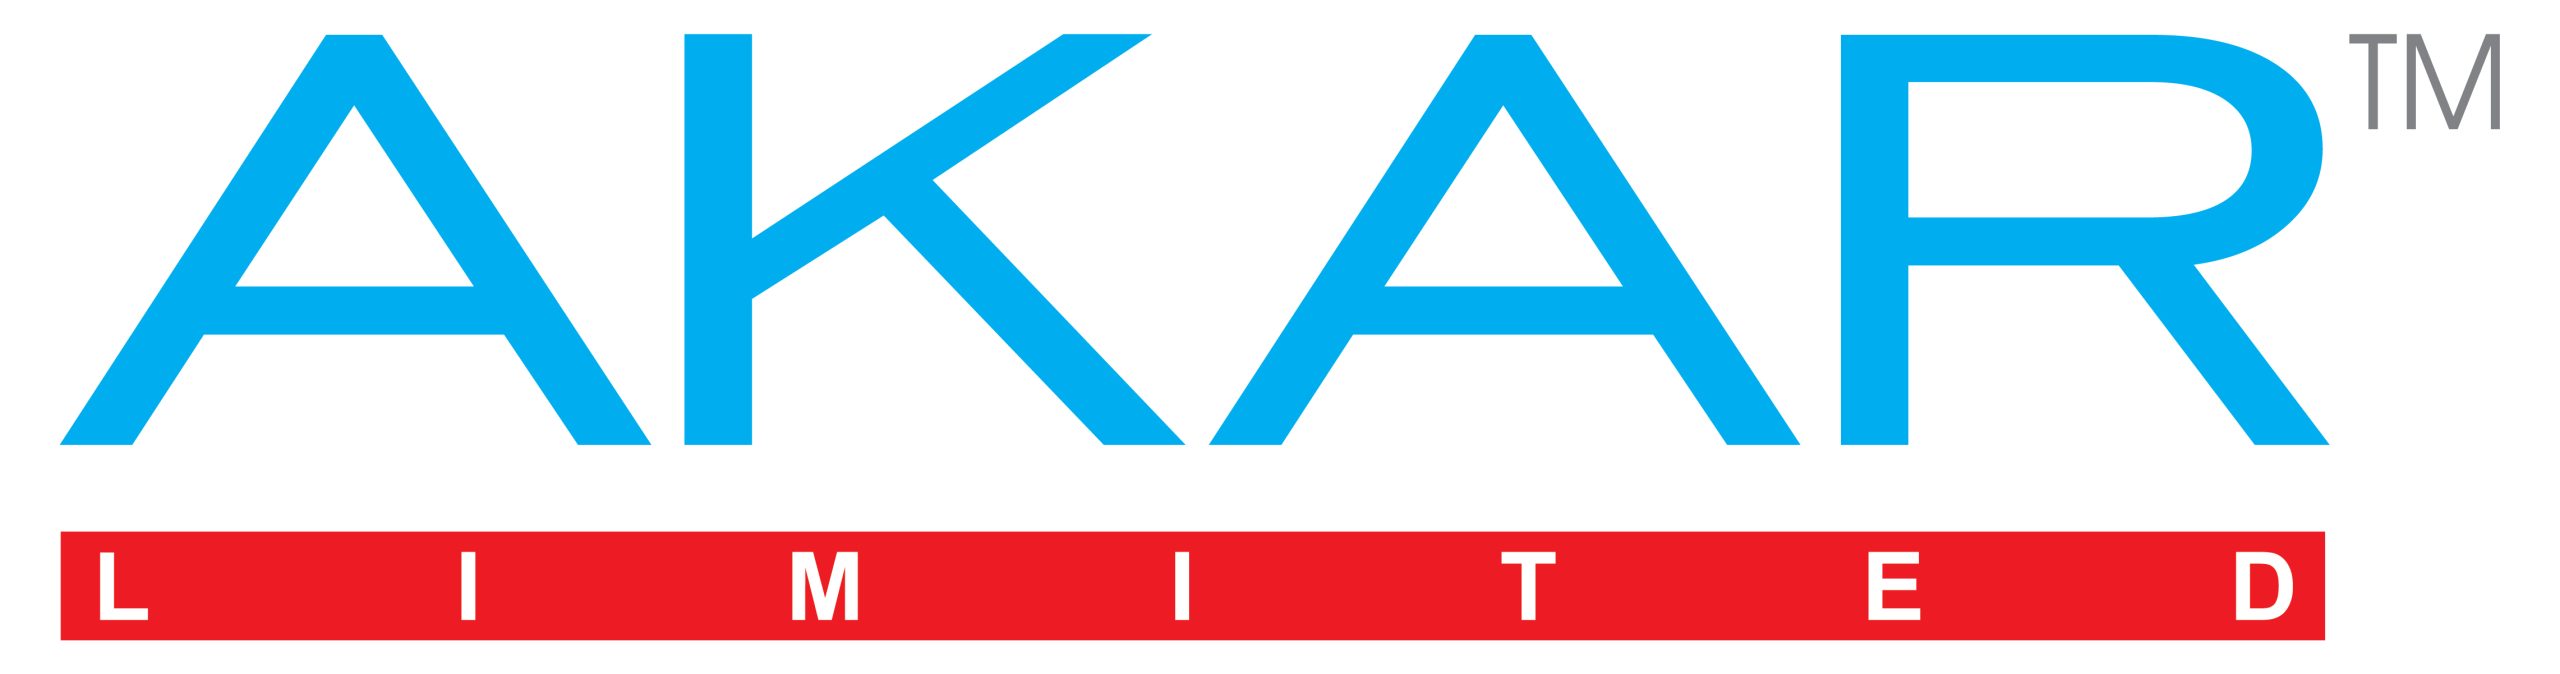 AKAR-Packaging-New-Logo-01-scaled